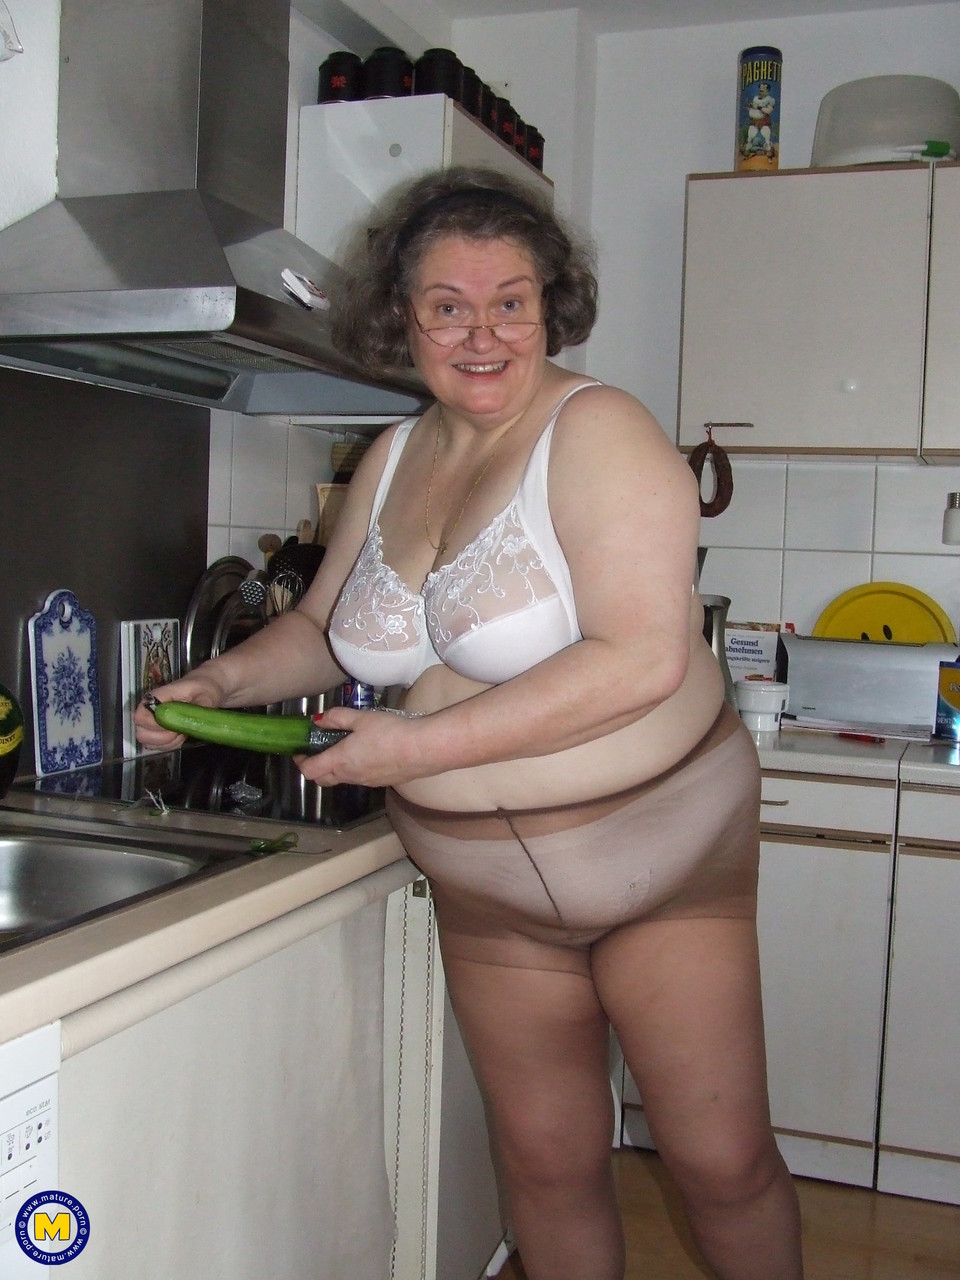 Fat mature housewife Birgid masturbates with a cucumber in the kitchen porno foto #423883220 | Mature NL Pics, Birgid, Granny, mobiele porno